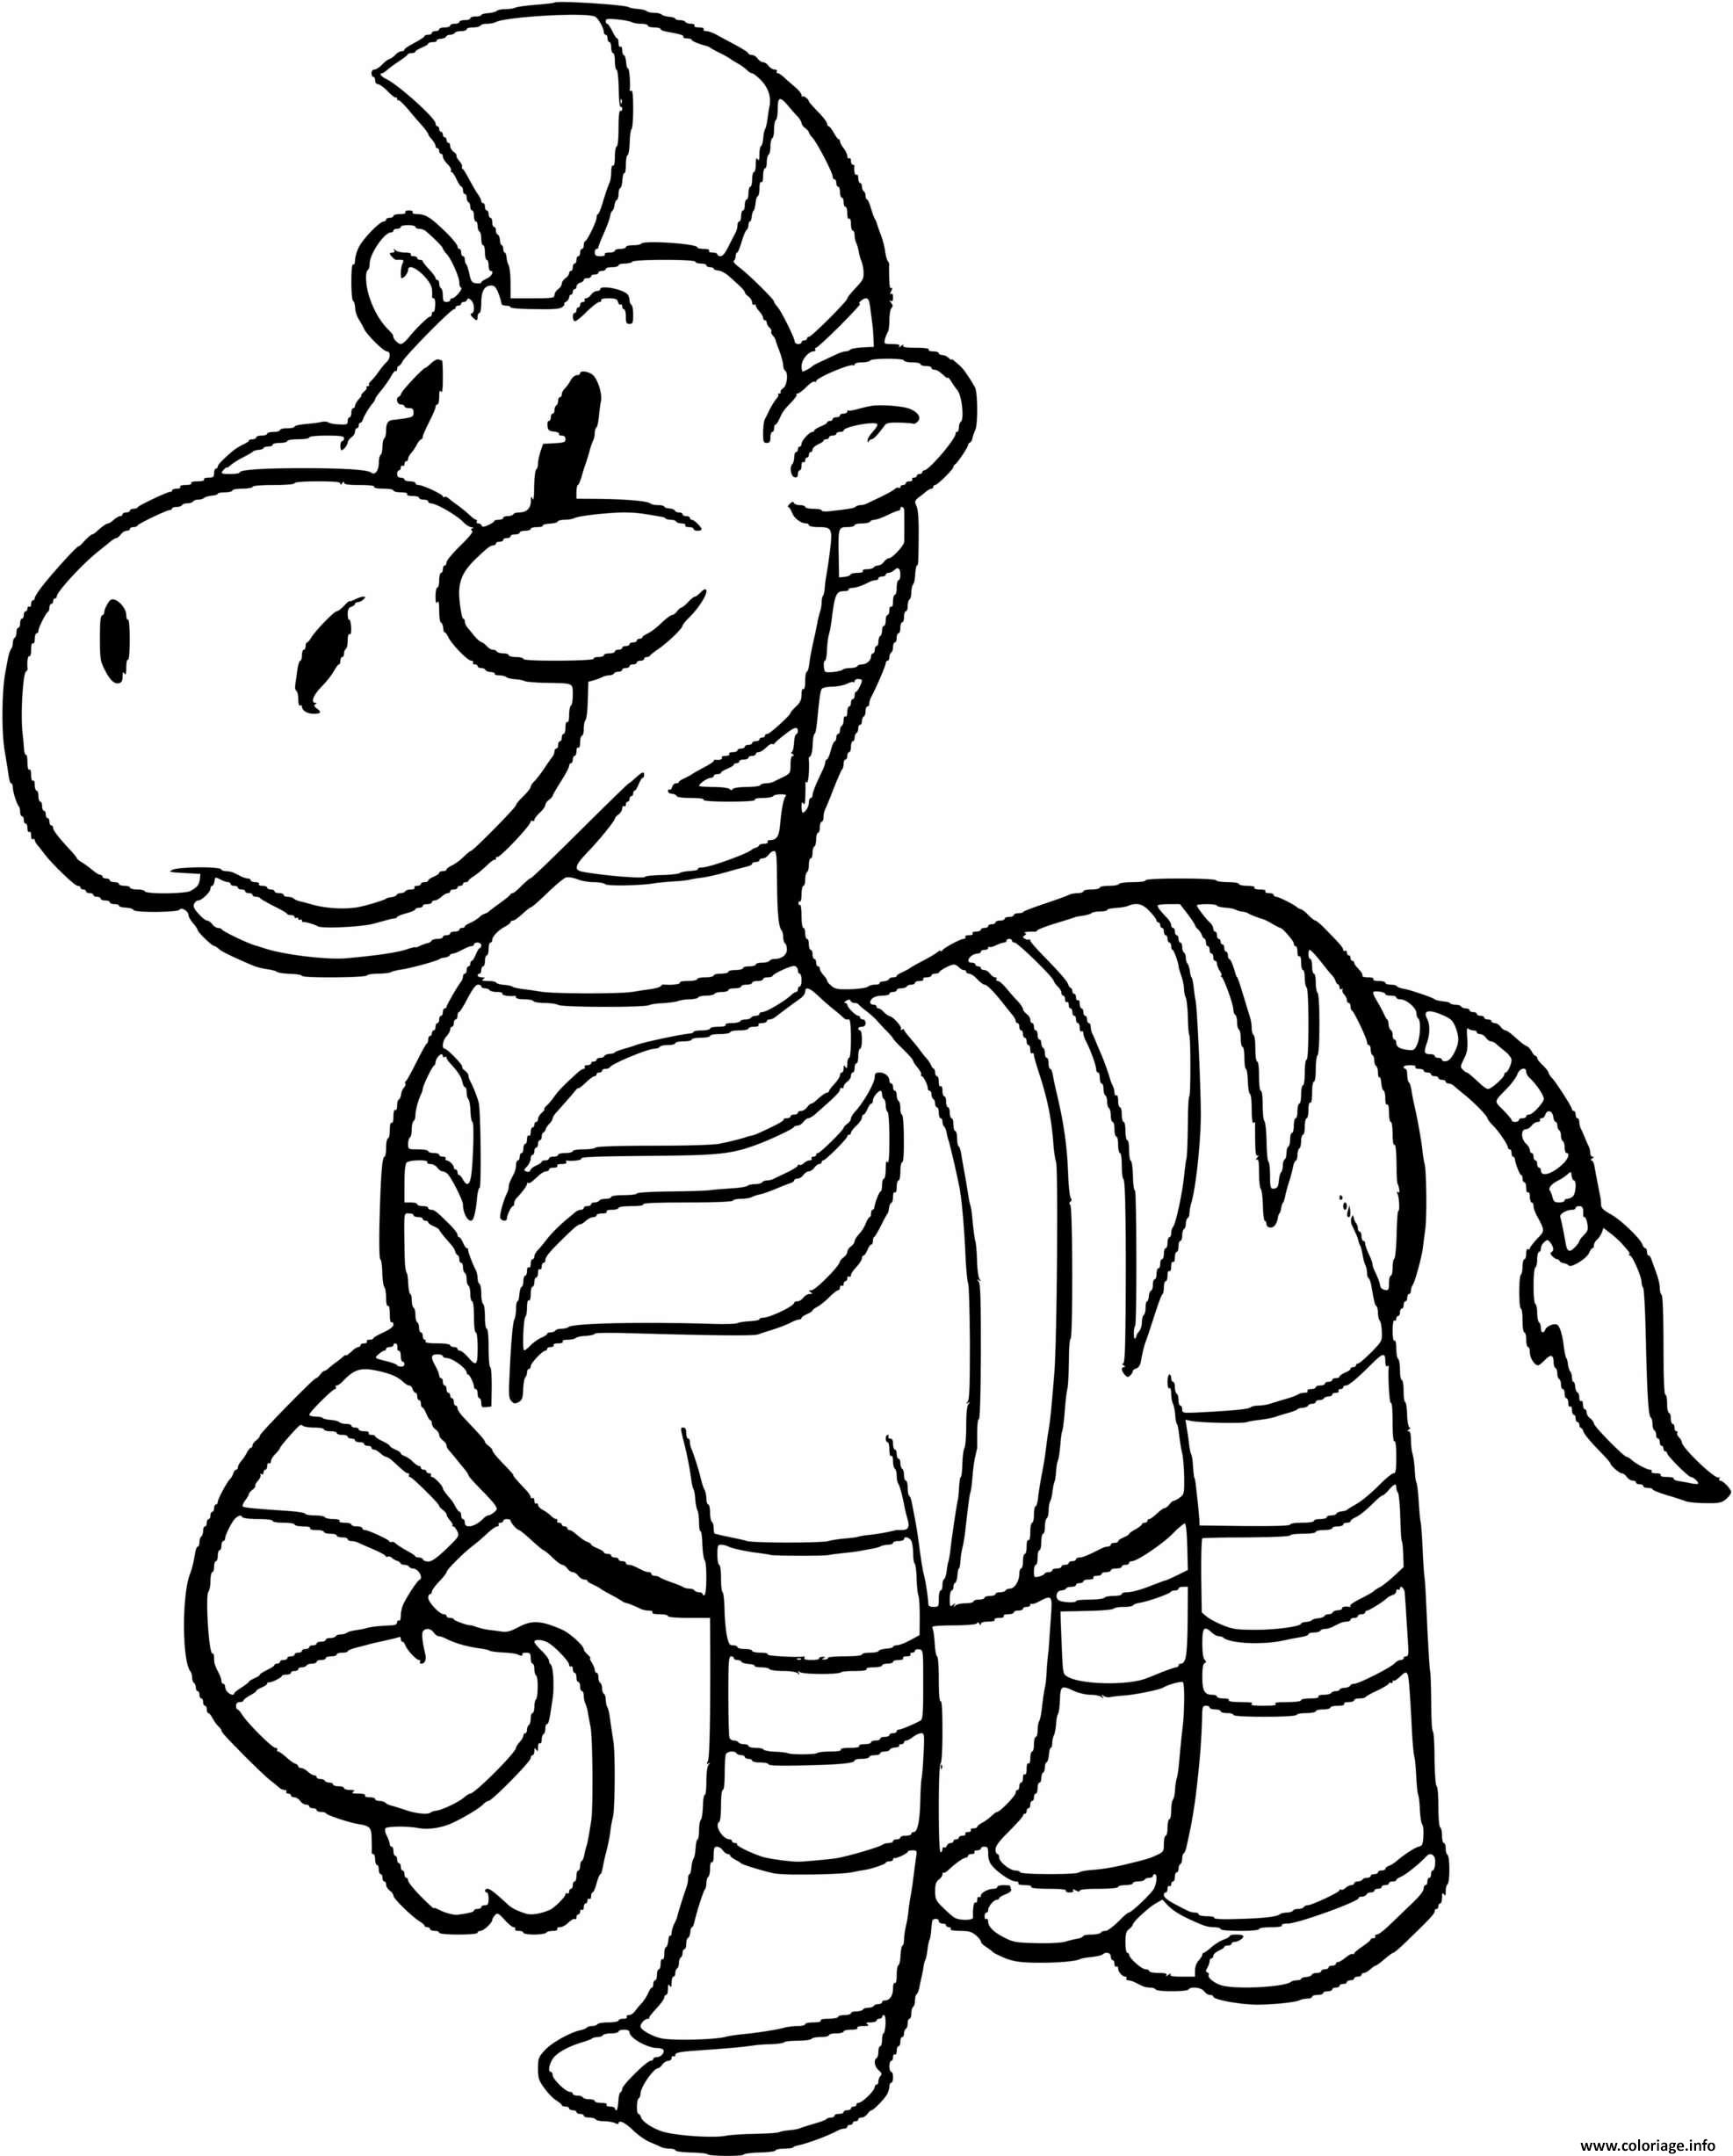 Dessin animaux sauvage comme le zebre pour les enfants de la maternelle Coloriage Gratuit à Imprimer